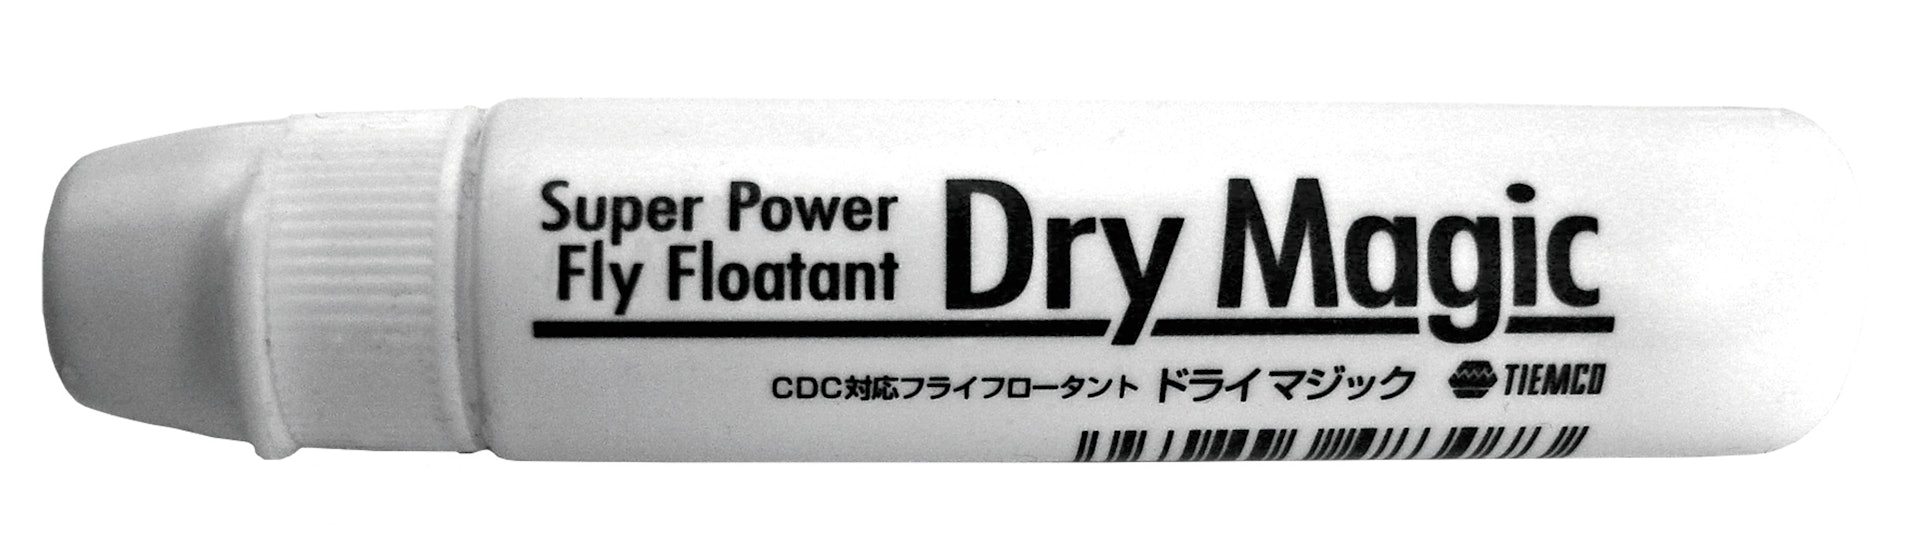 TMC Dry Magic Super Power Fly Floatant (slide 1 of 1)